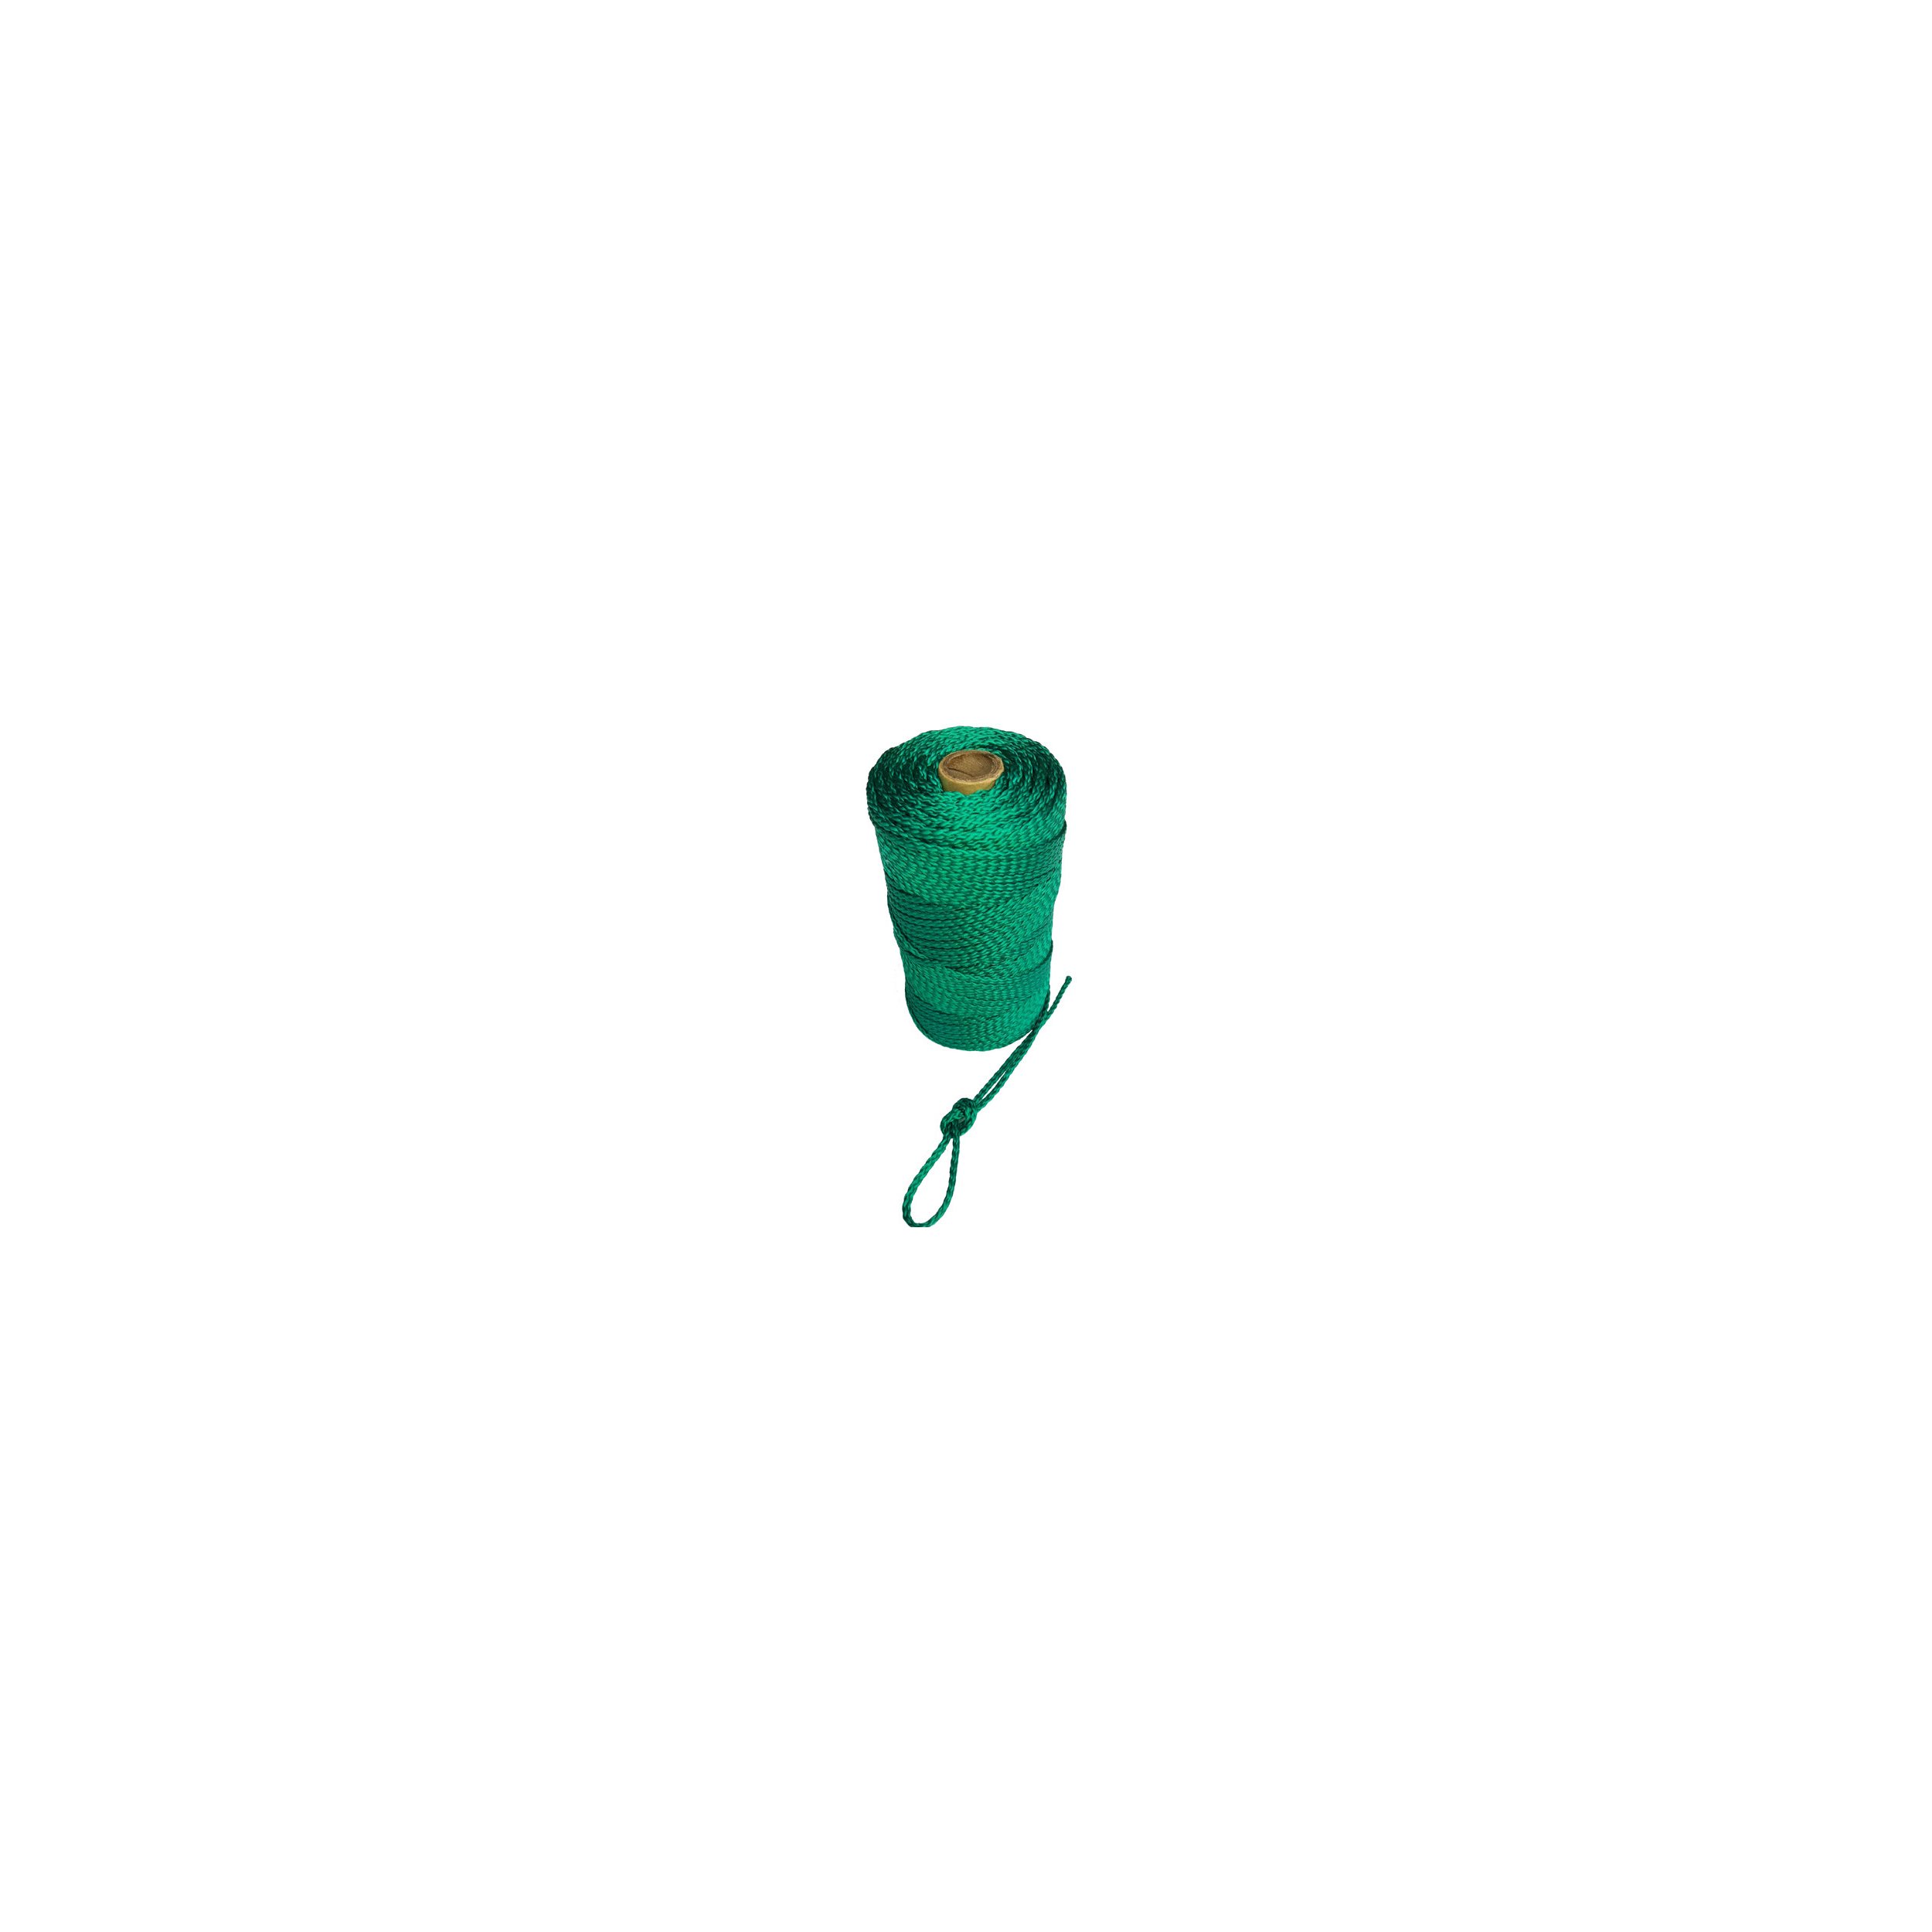 Corde à tresser en PP Ø 3 - 6 mm - différentes couleurs - 100 mètres sur bobine Ø 4 mm-
vert